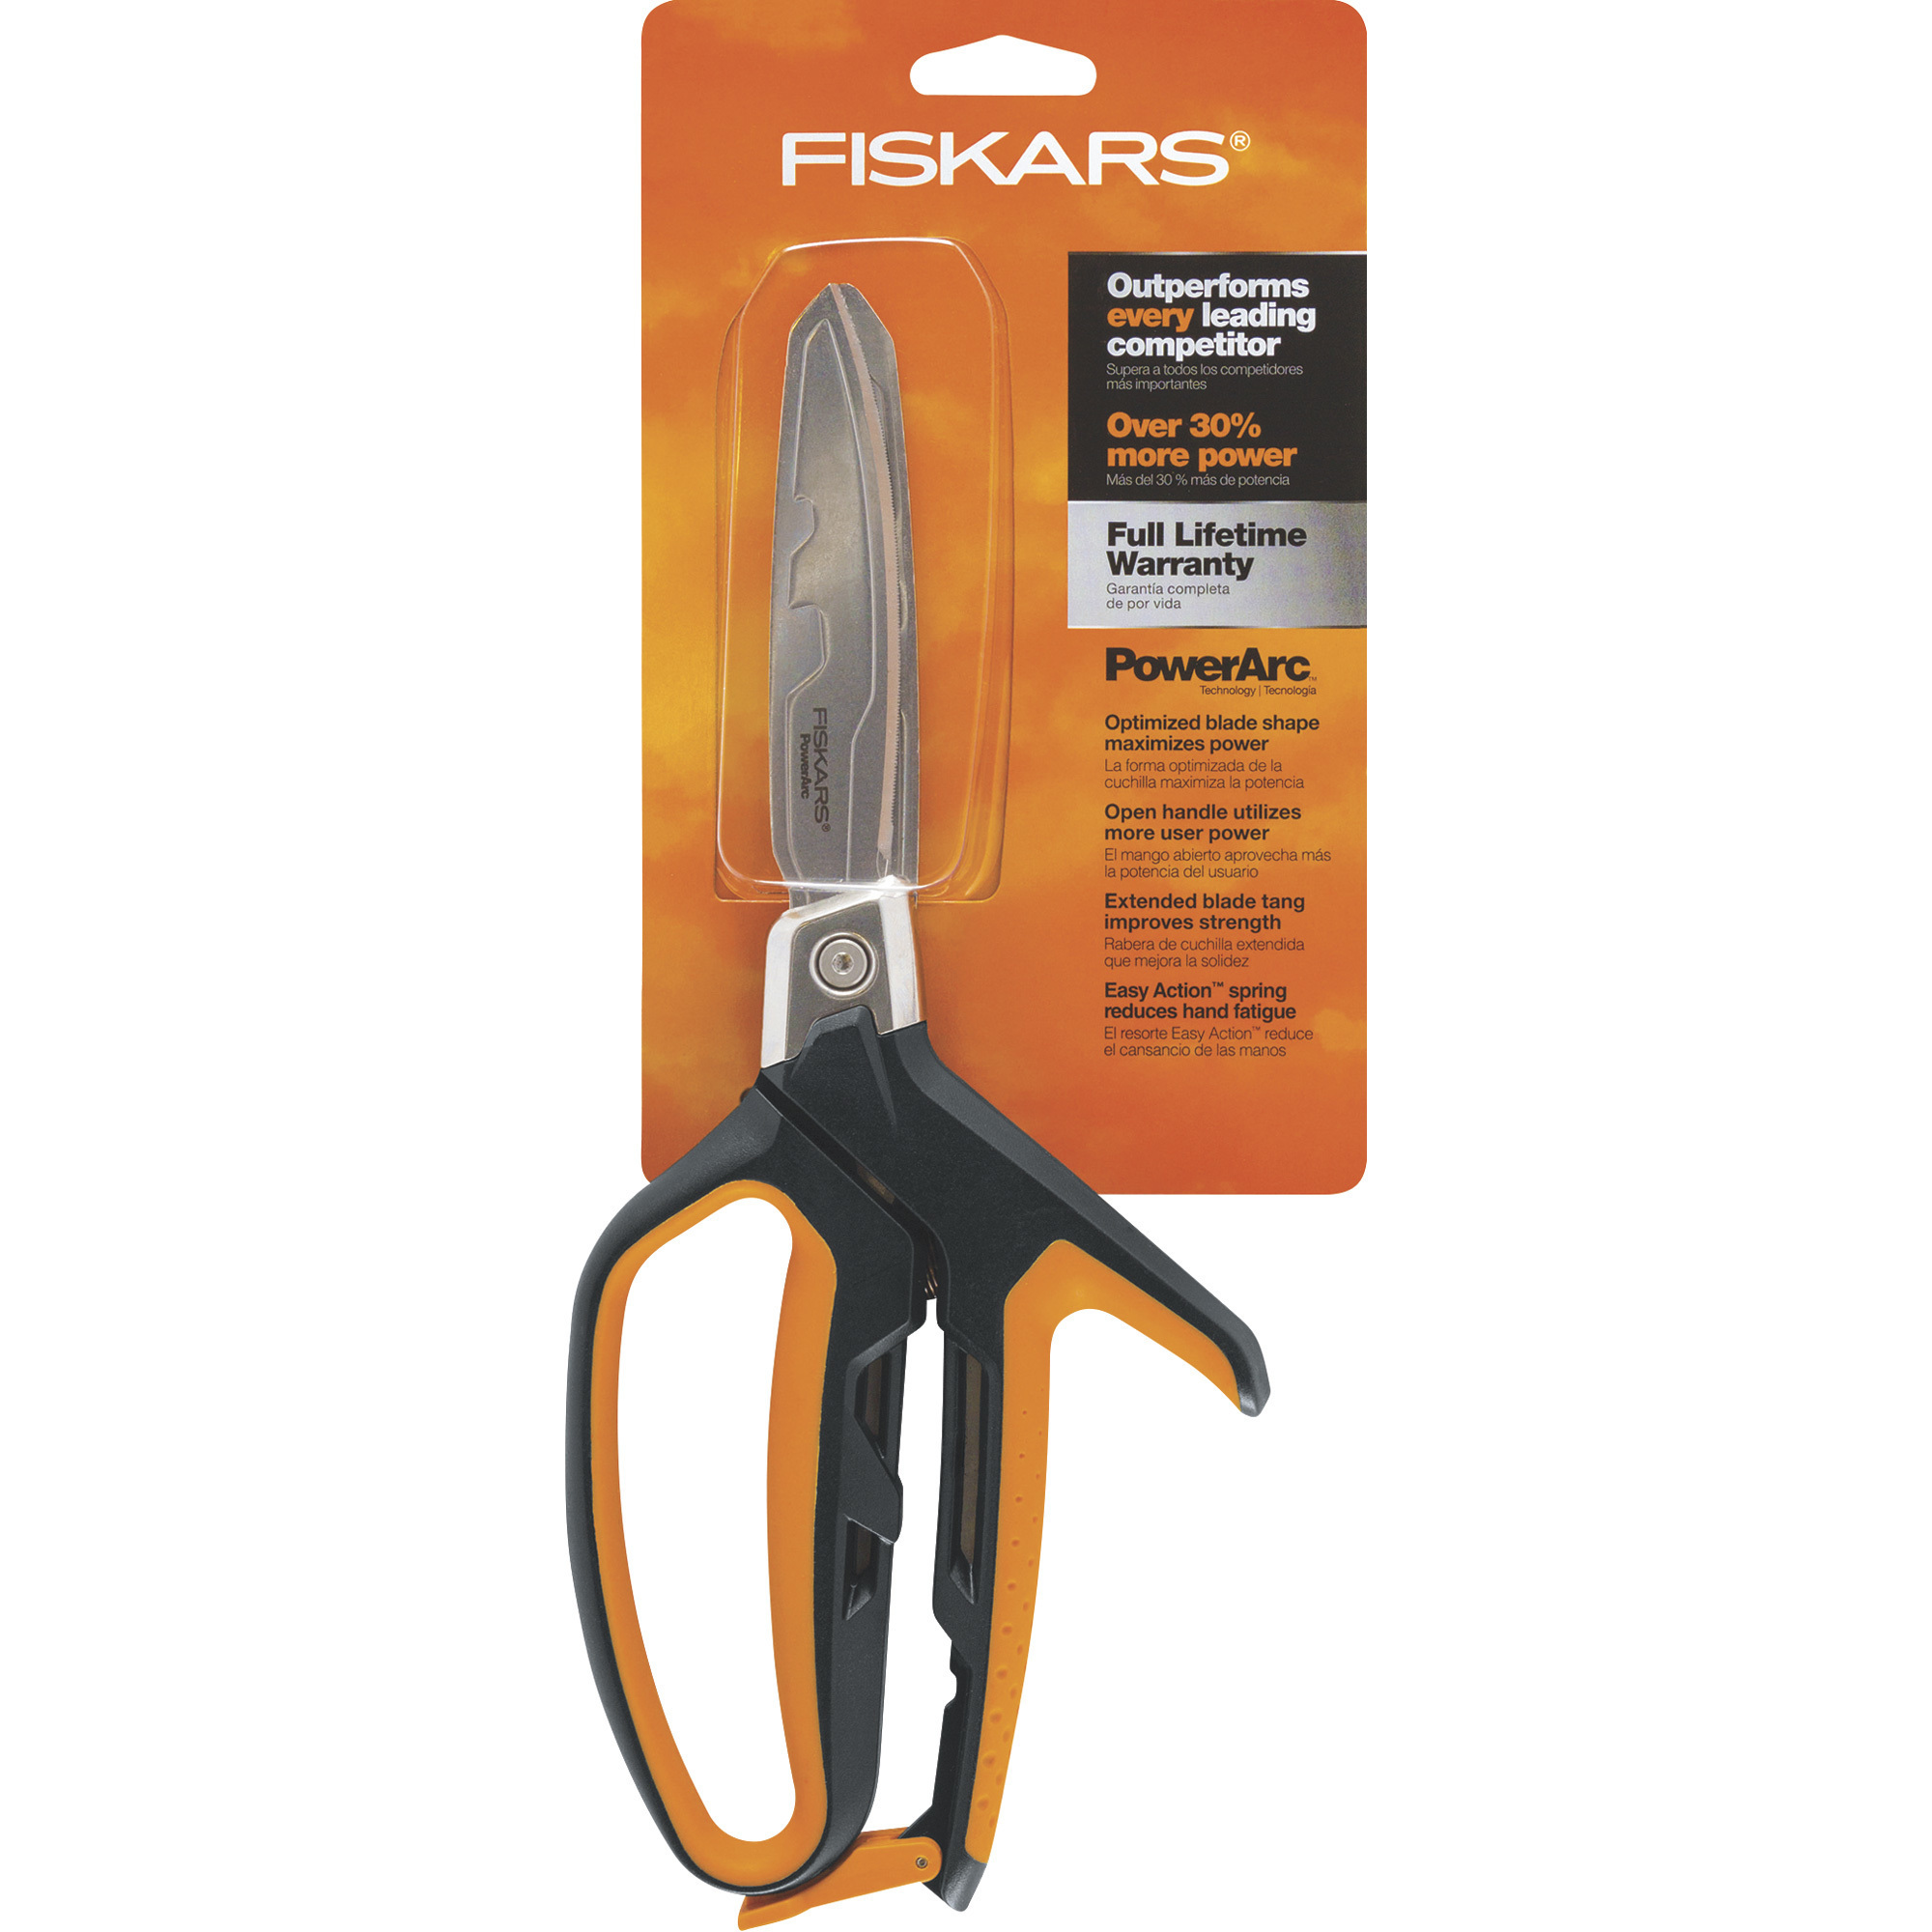 Fiskars PowerArc Serrated Shears â 10Inch Blade, Model 710160-1001